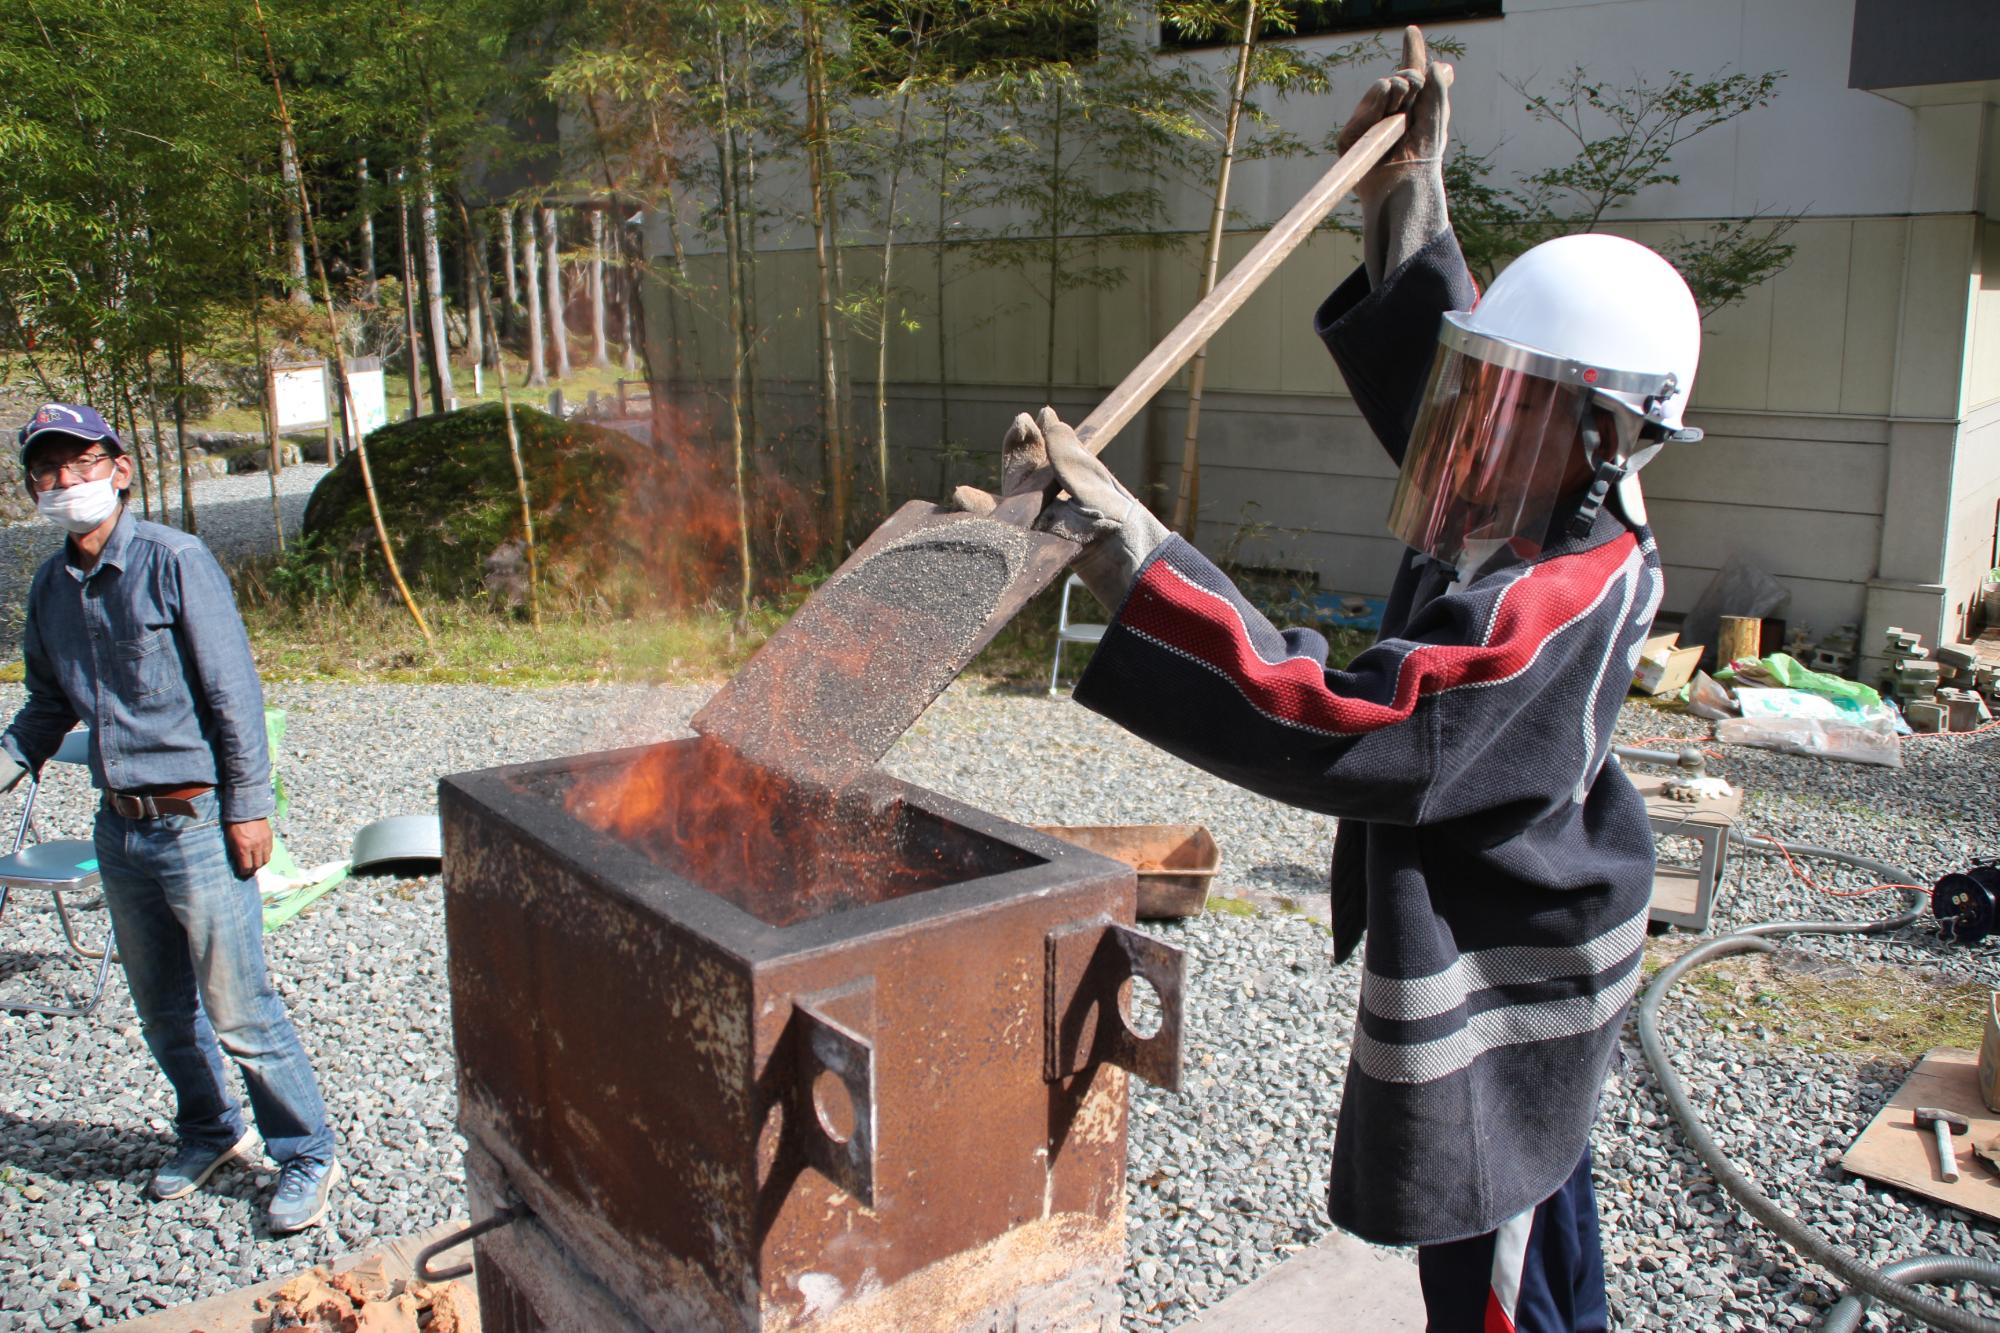 炭を燃焼している炉に砂鉄を投入する生徒の写真